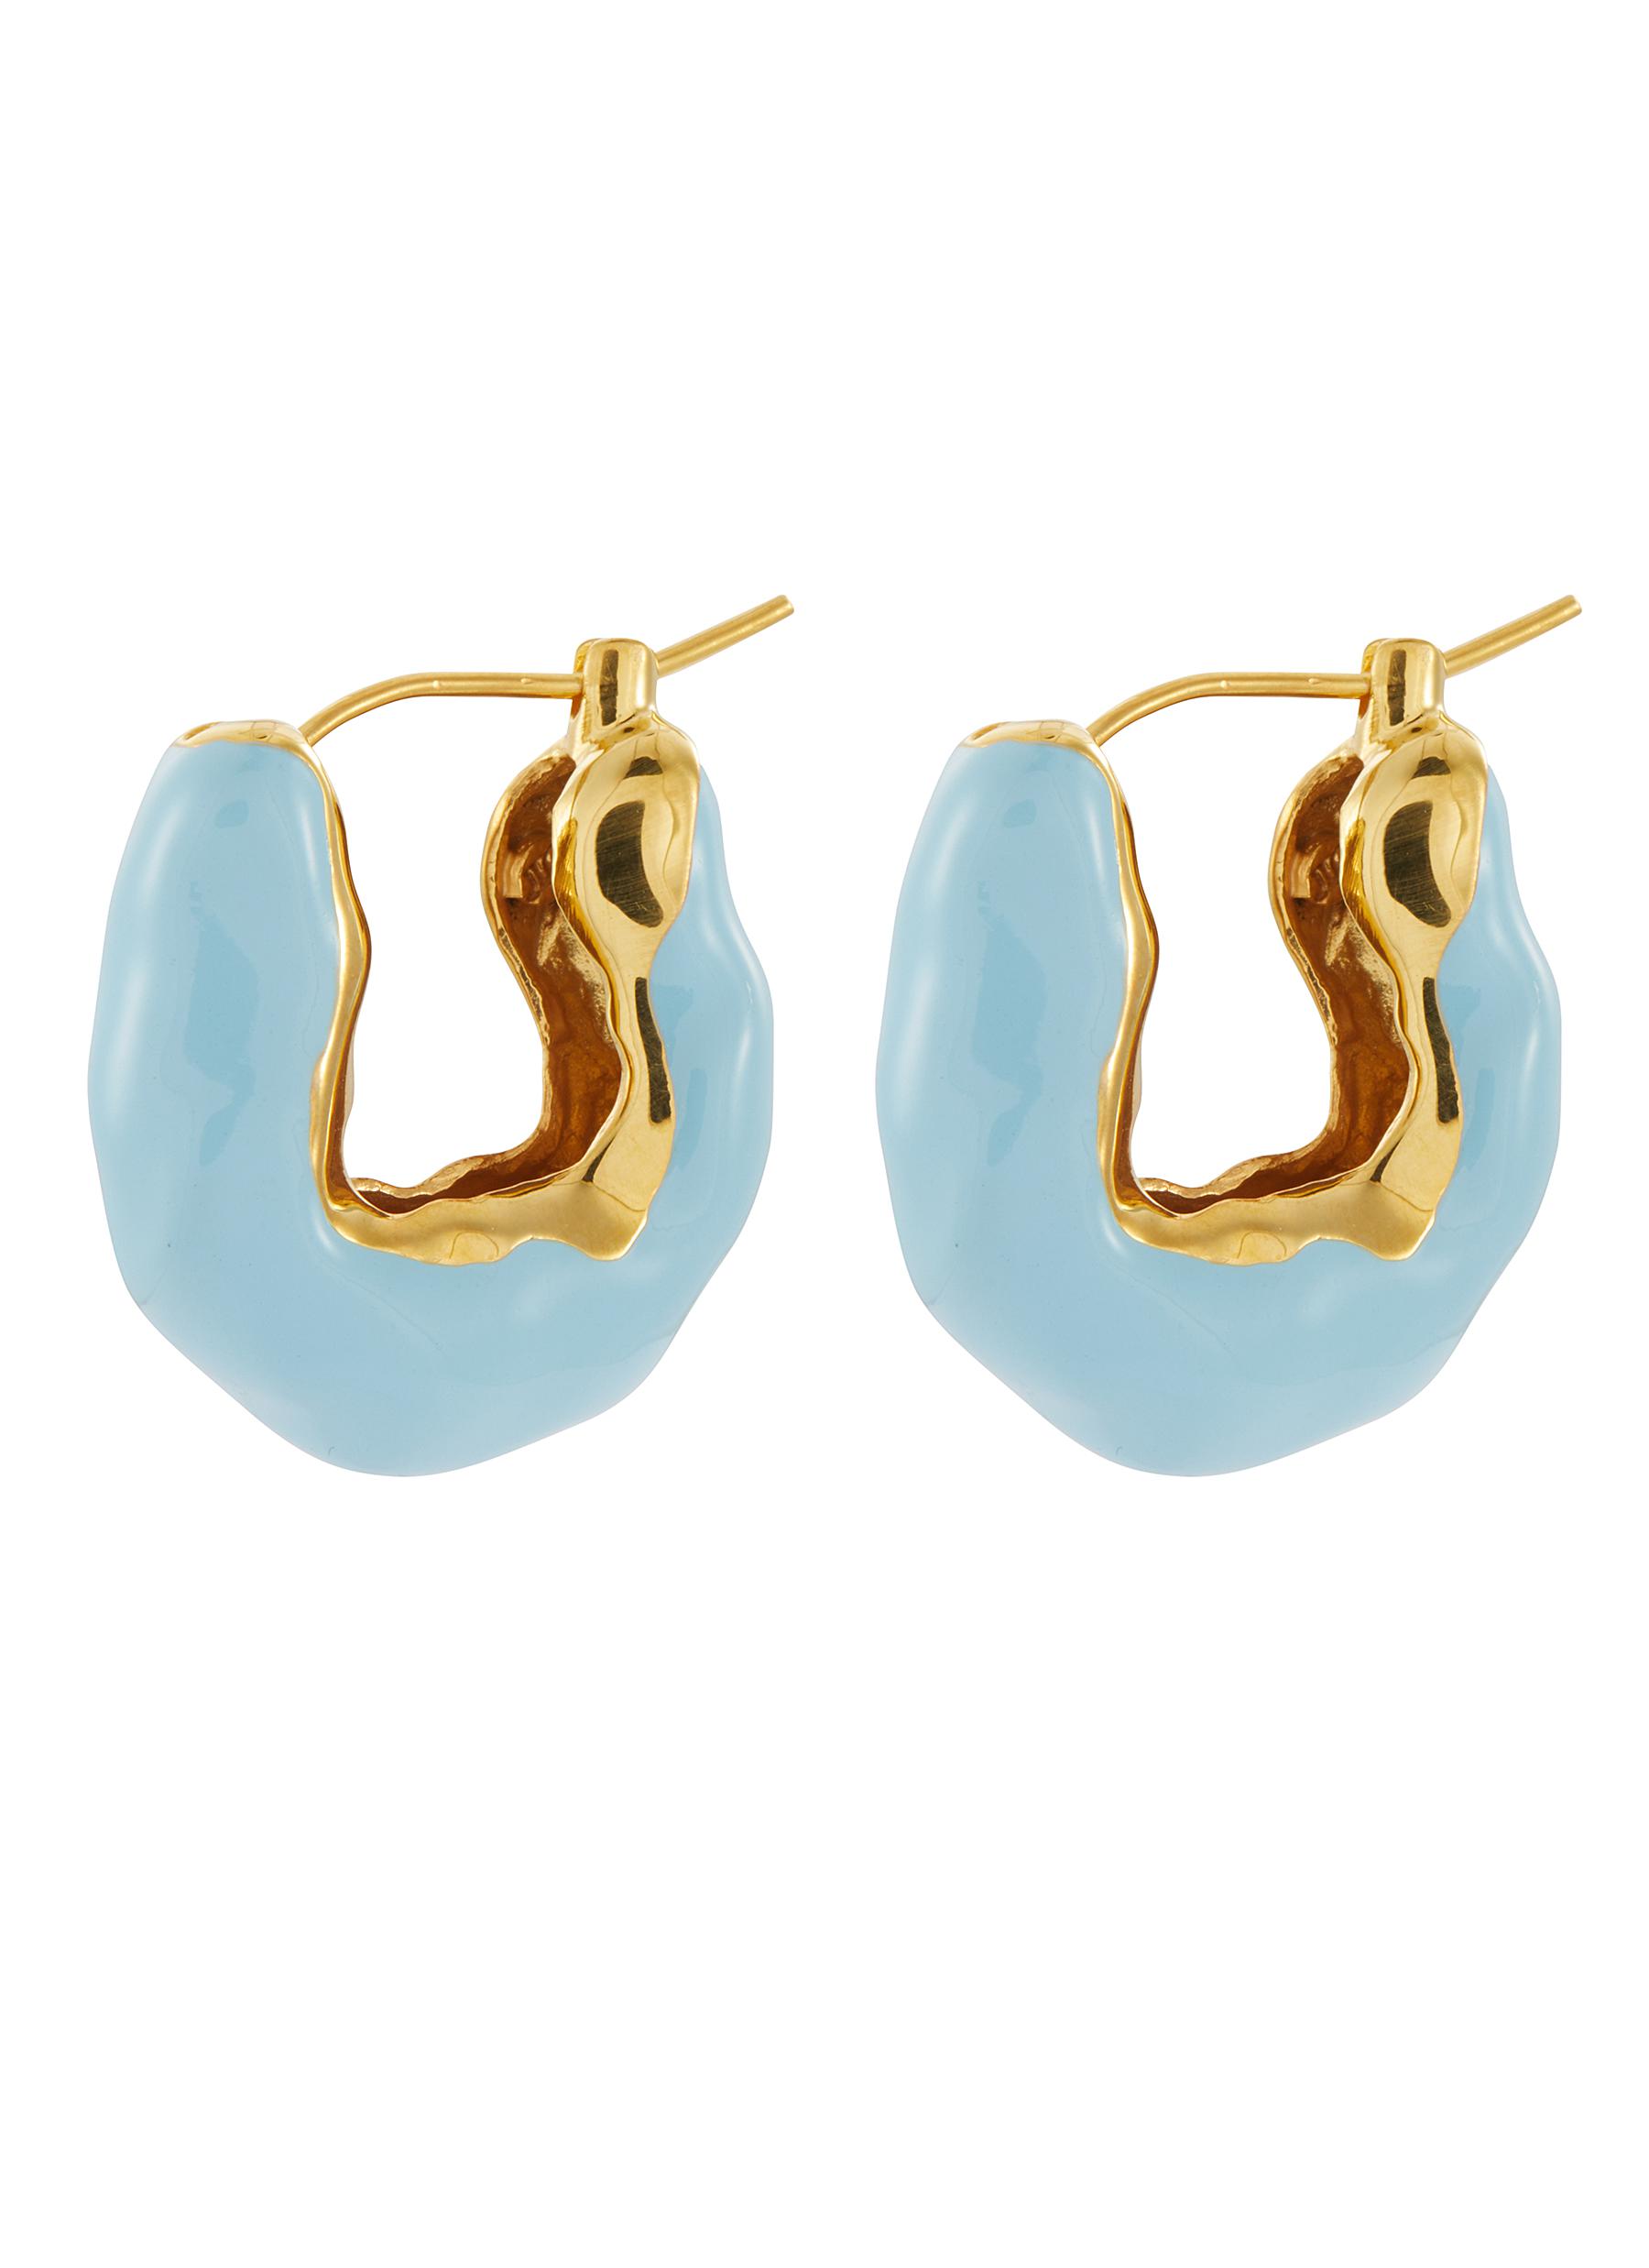 JOANNA LAURA CONSTANTINE 'Waves' enamelled hoop earrings